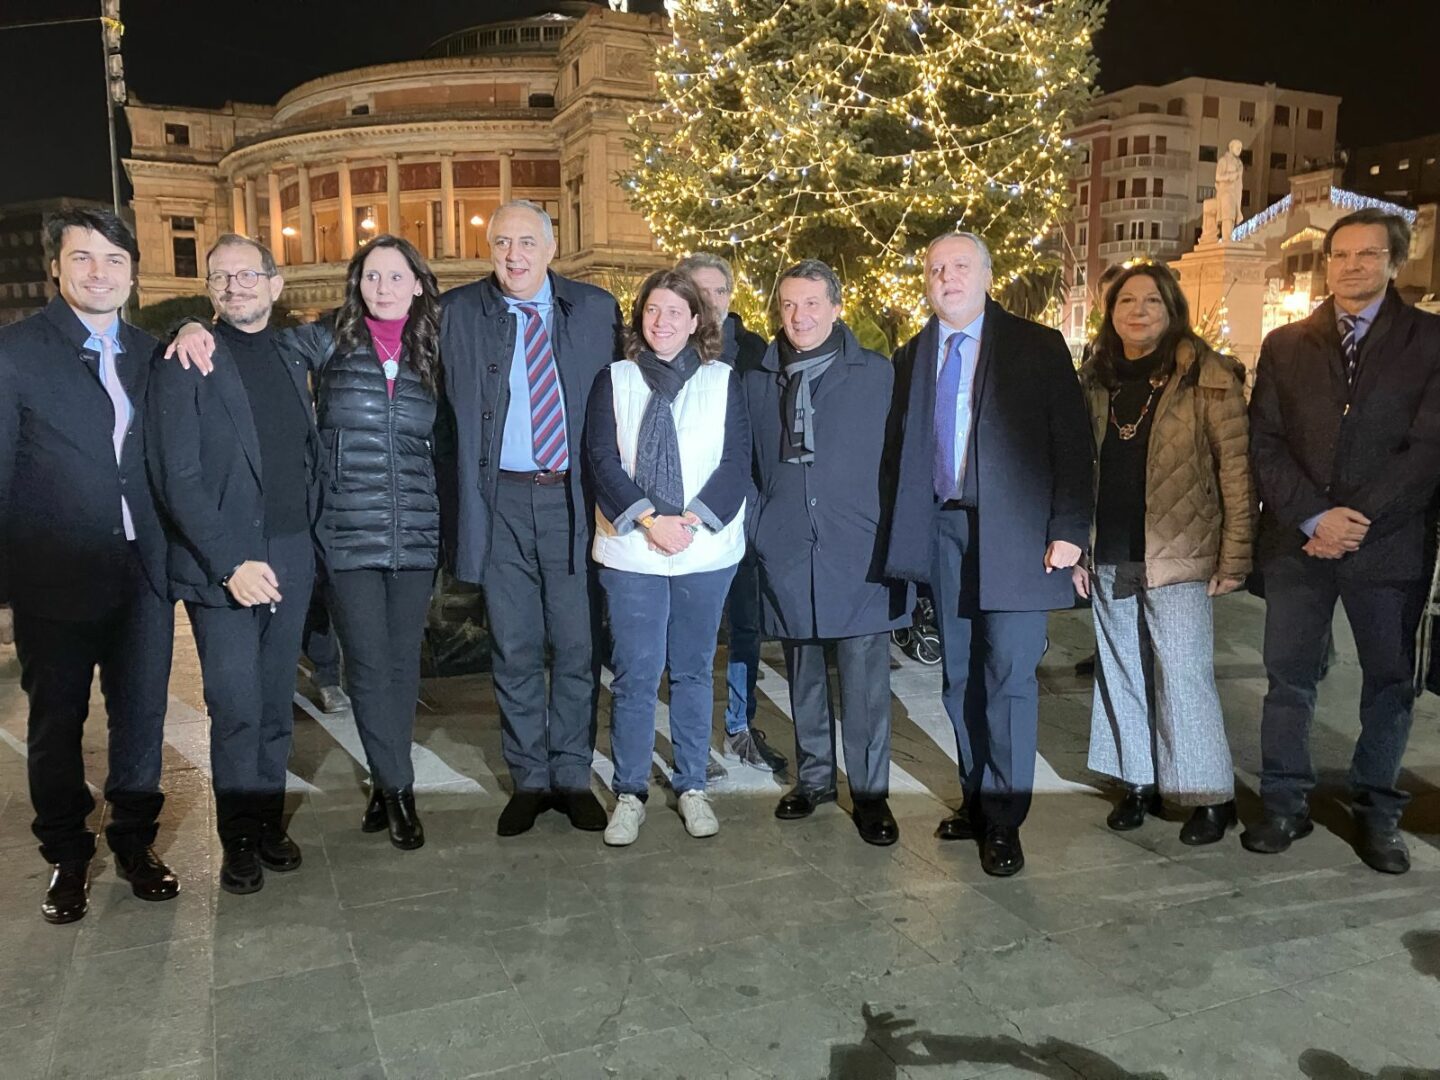 Natale a Palermo, Lagalla accende l’albero in piazza Politeama “Sobrietà e ripartenza”